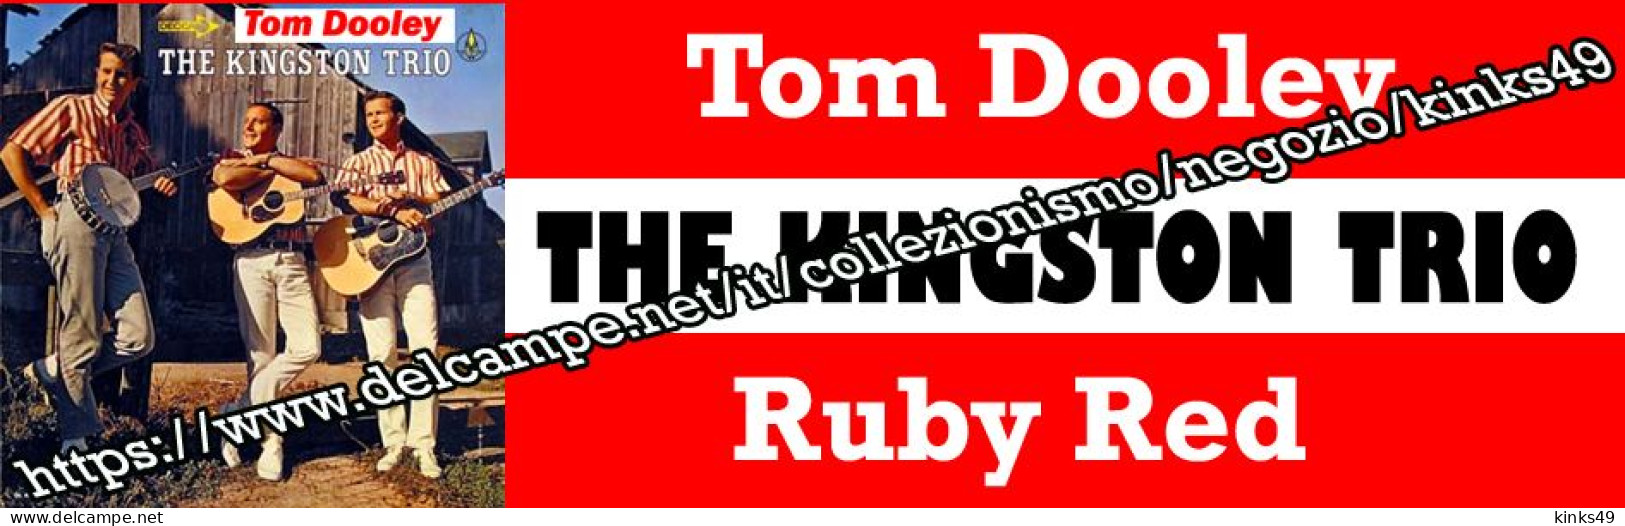 686> < THE KINGSTON TRIO : "Tom Dooley" > Tagliando / Sticker Juke Box = LEGGERE DESCRIZIONE = - Country En Folk